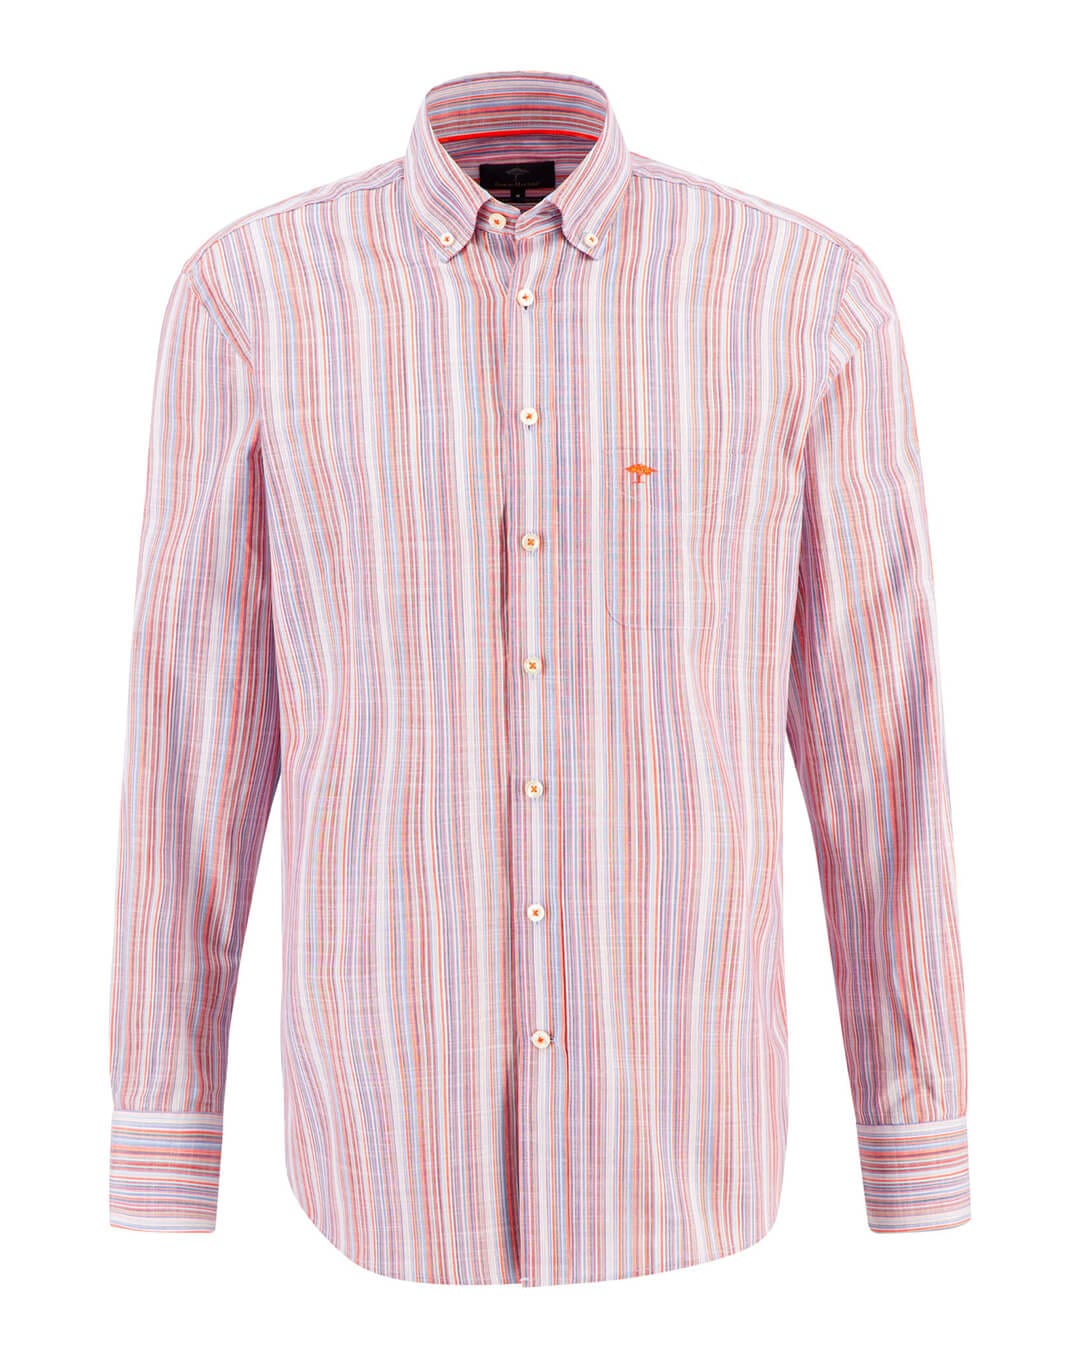 Fynch-Hatton Shirts Fynch-Hatton Orange Summer Striped Shirt